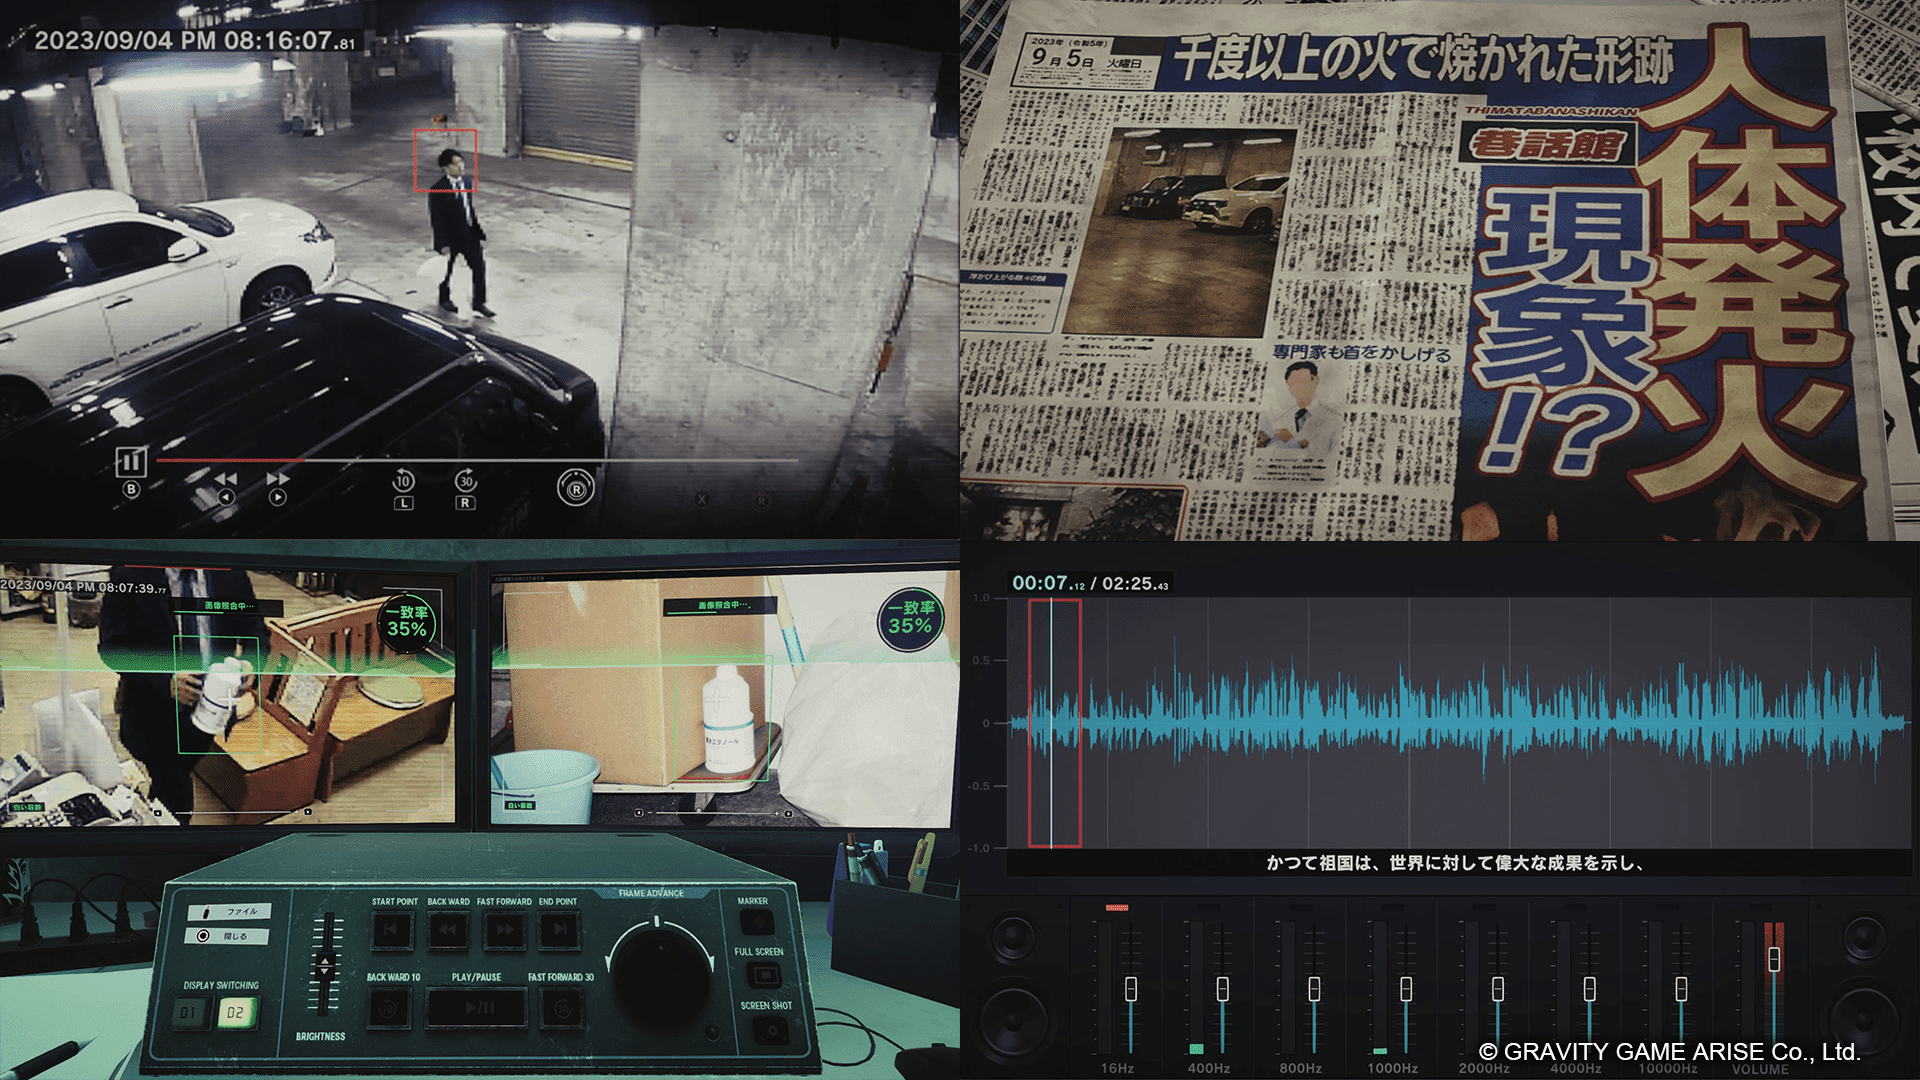 リアルな解析ツールを使って未解決事件を捜査するゲーム『東京サイコデミック』が、元刑事の「リーゼント刑事」とコラボした動画が公開_001